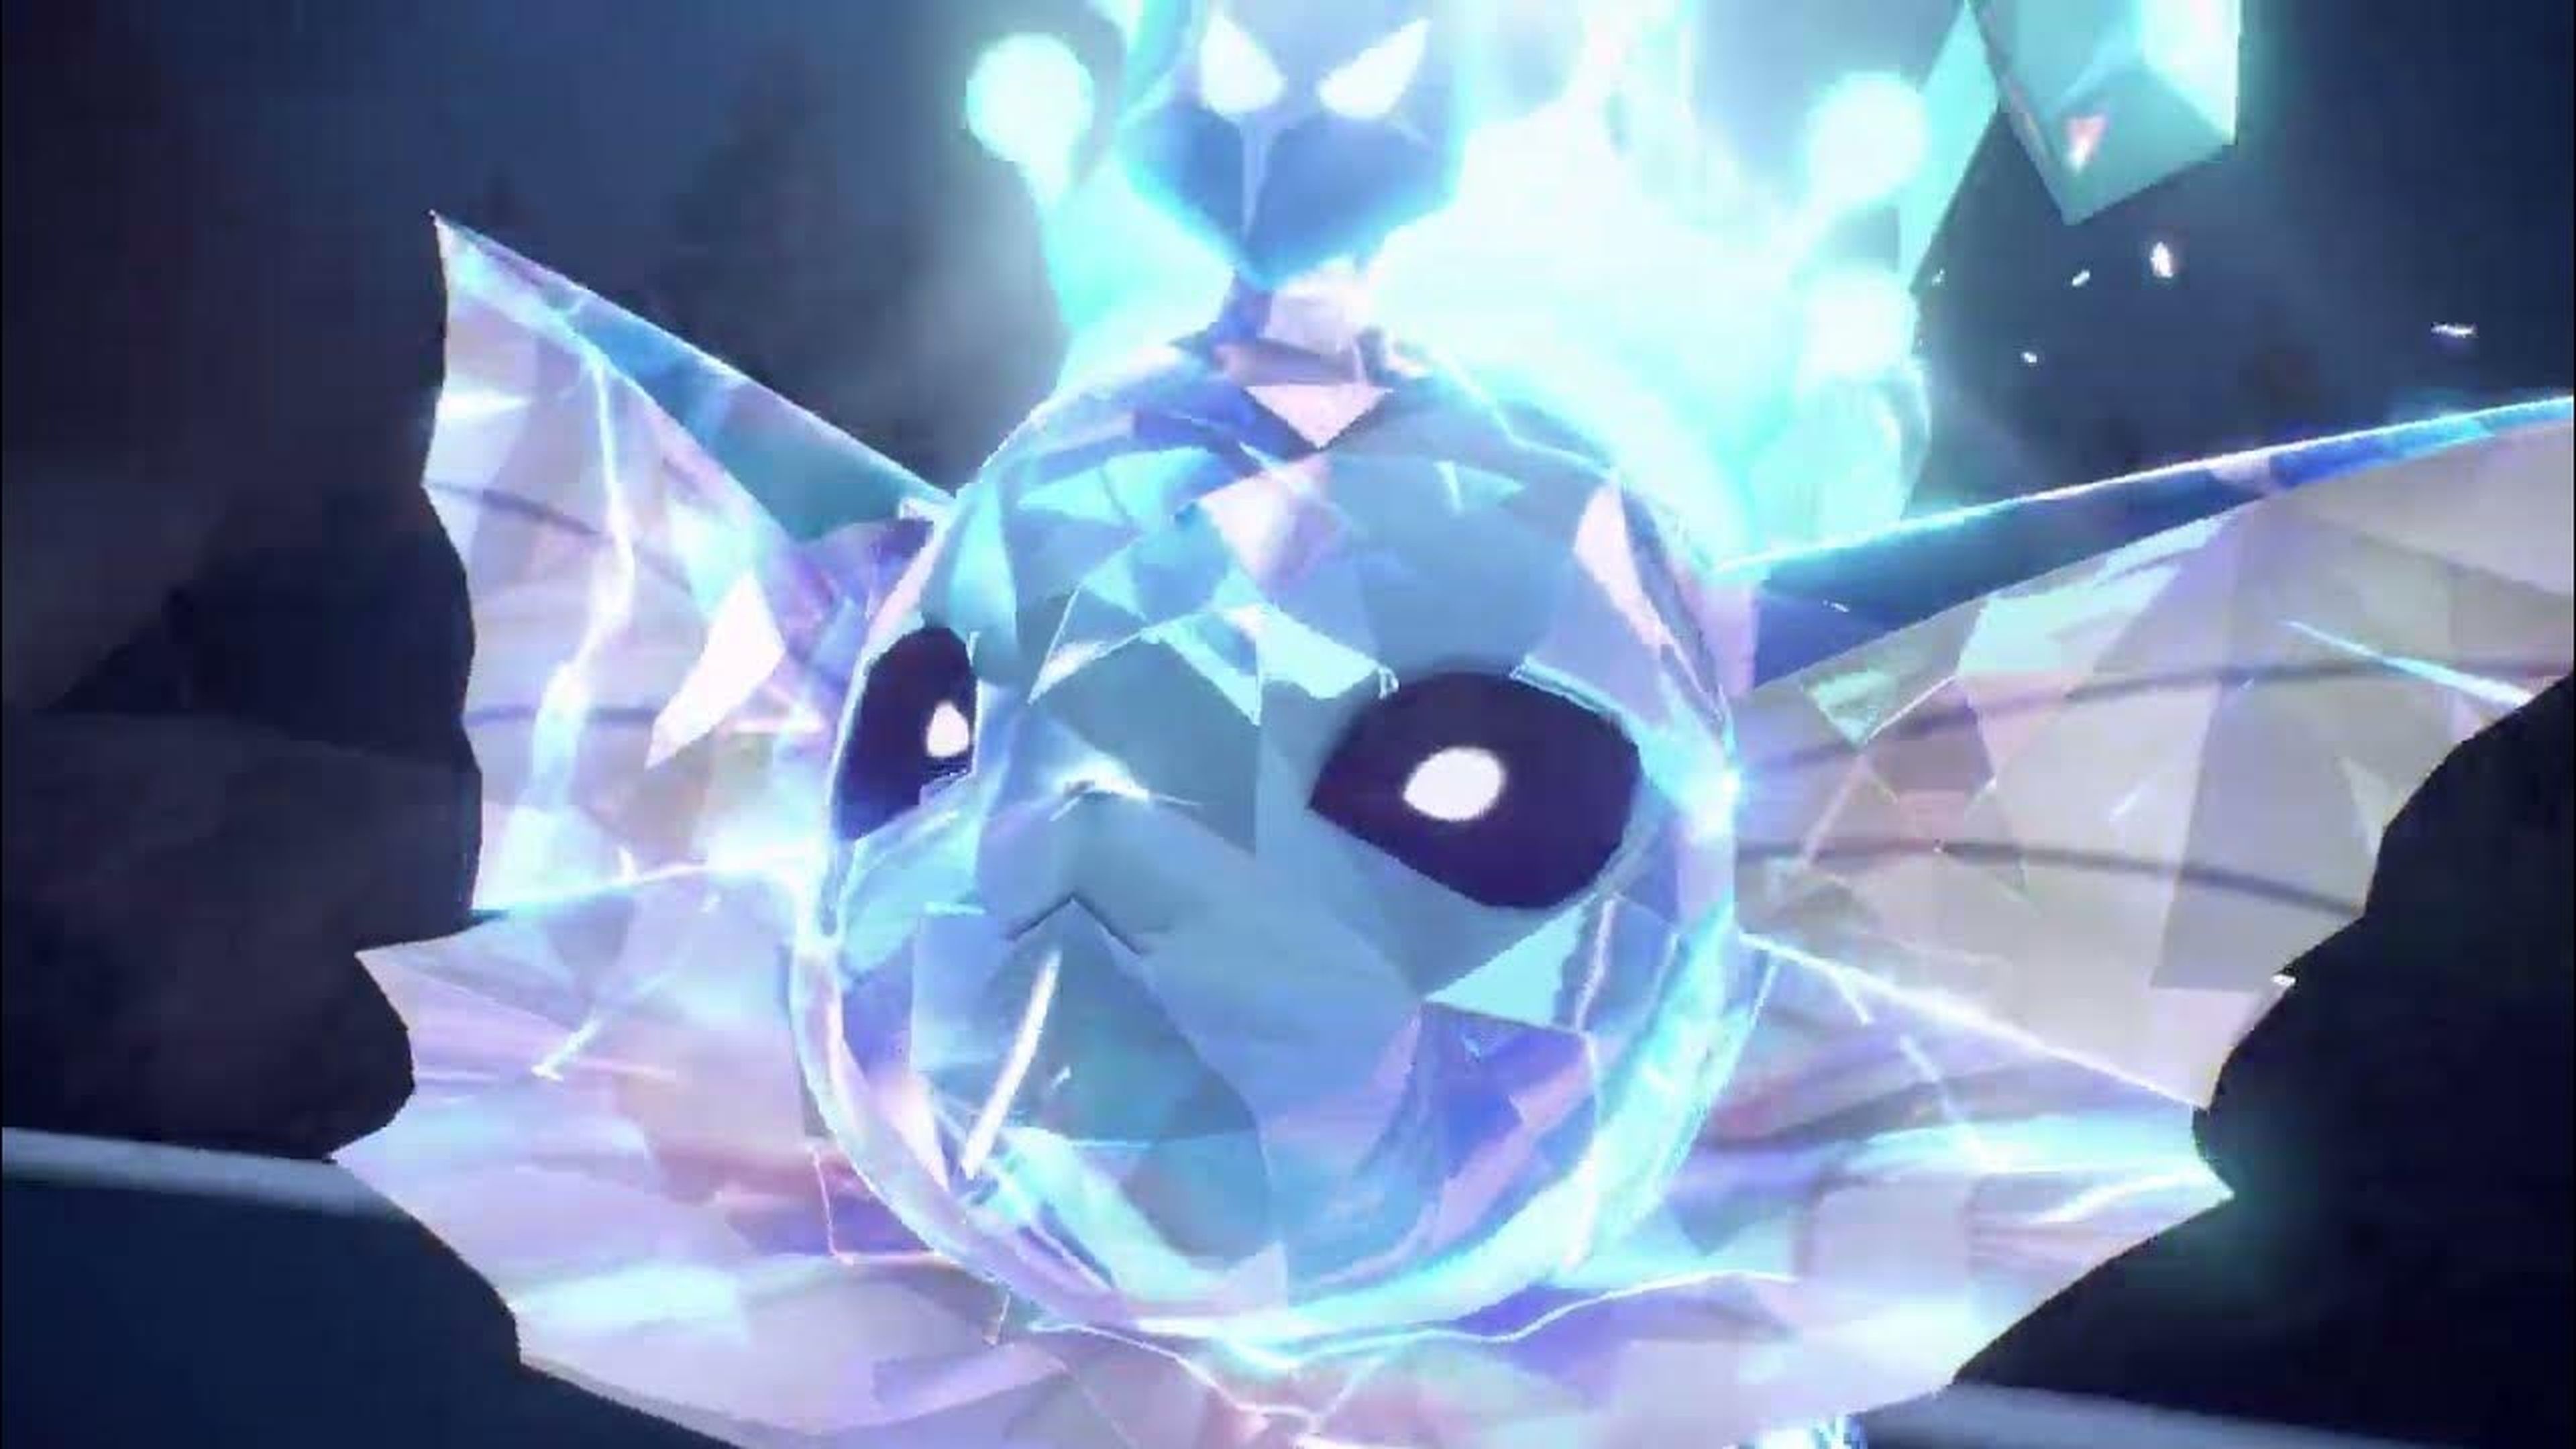 El truco infalible para aumentar la probabilidad de Pokémon Shiny en  Escarlata y Púrpura